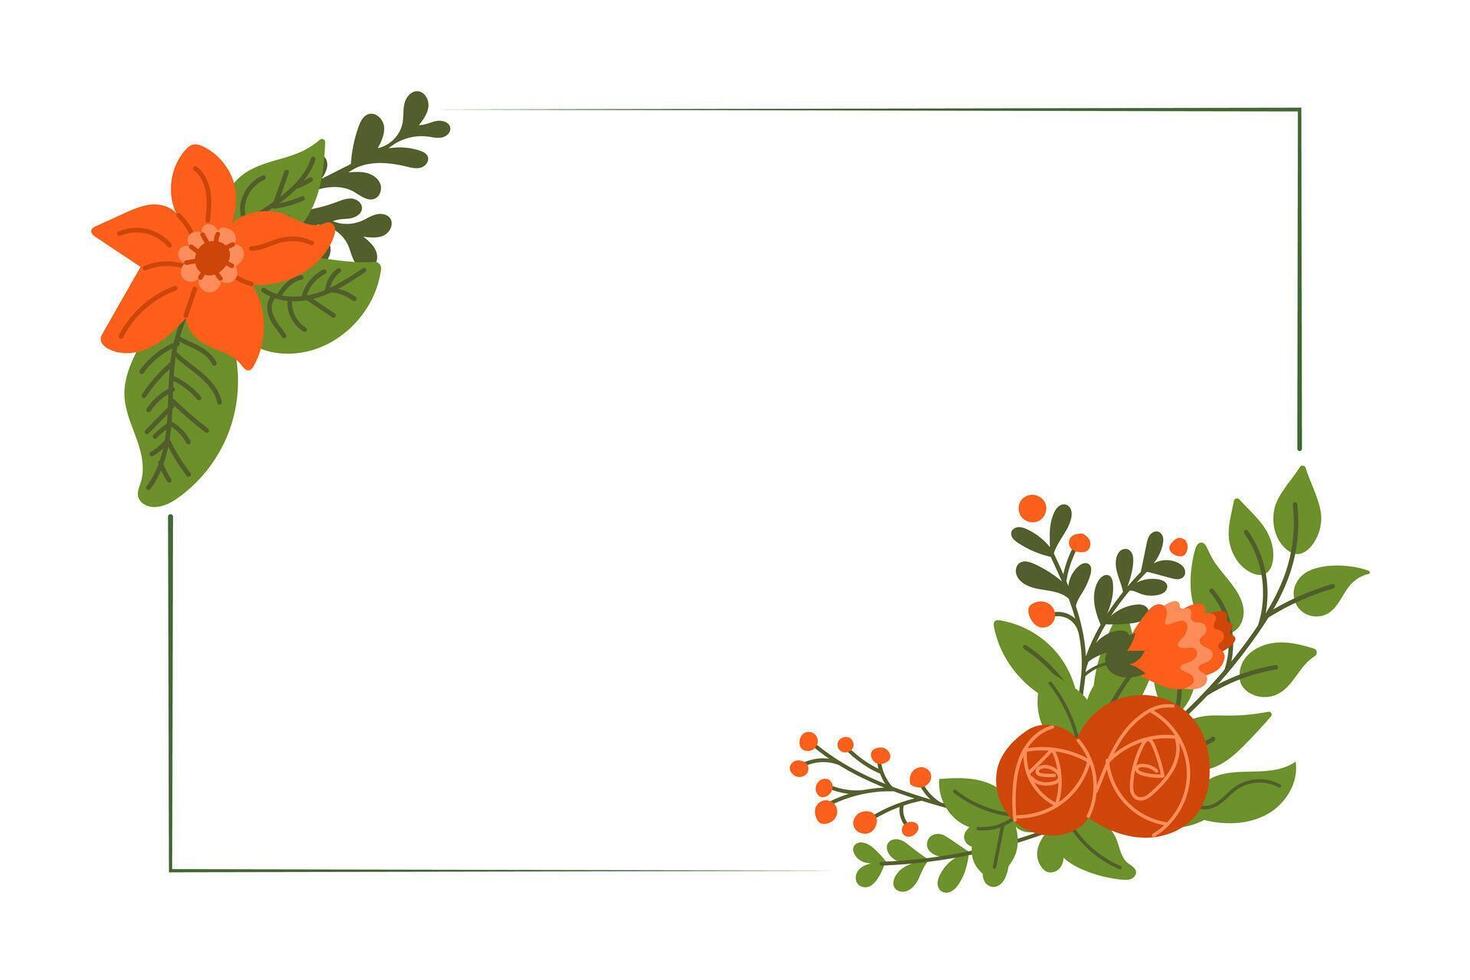 floral cumprimento cartão modelo dentro plano simples estilo. horizontal bandeira para social meios de comunicação ou convite para casamento, aniversário ou aniversário. moderno abstrato mão desenhado flores isolado vetor